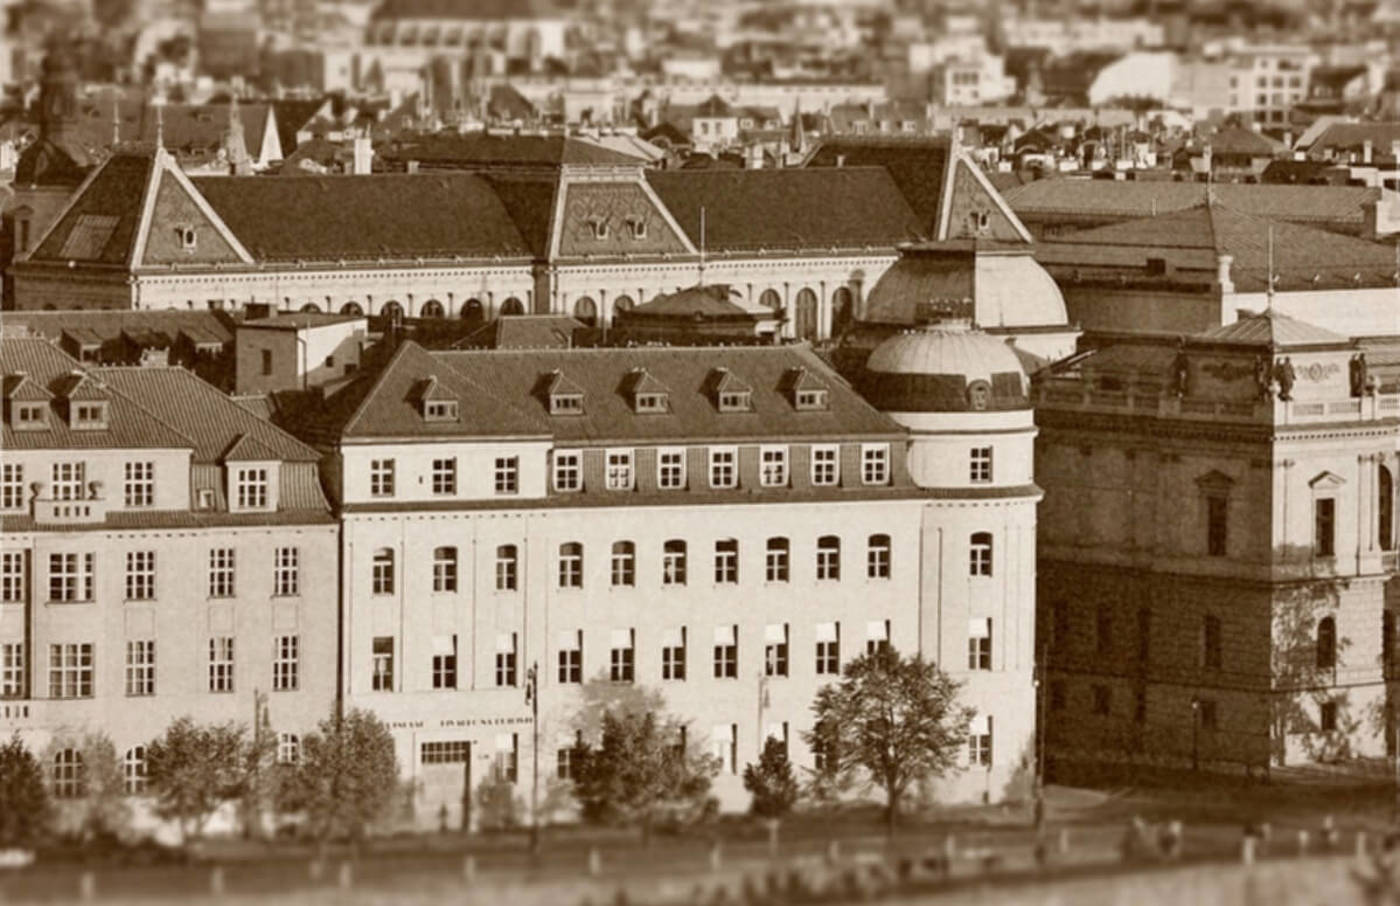 The building of Prague Conservatoire next door to Rudolfinum